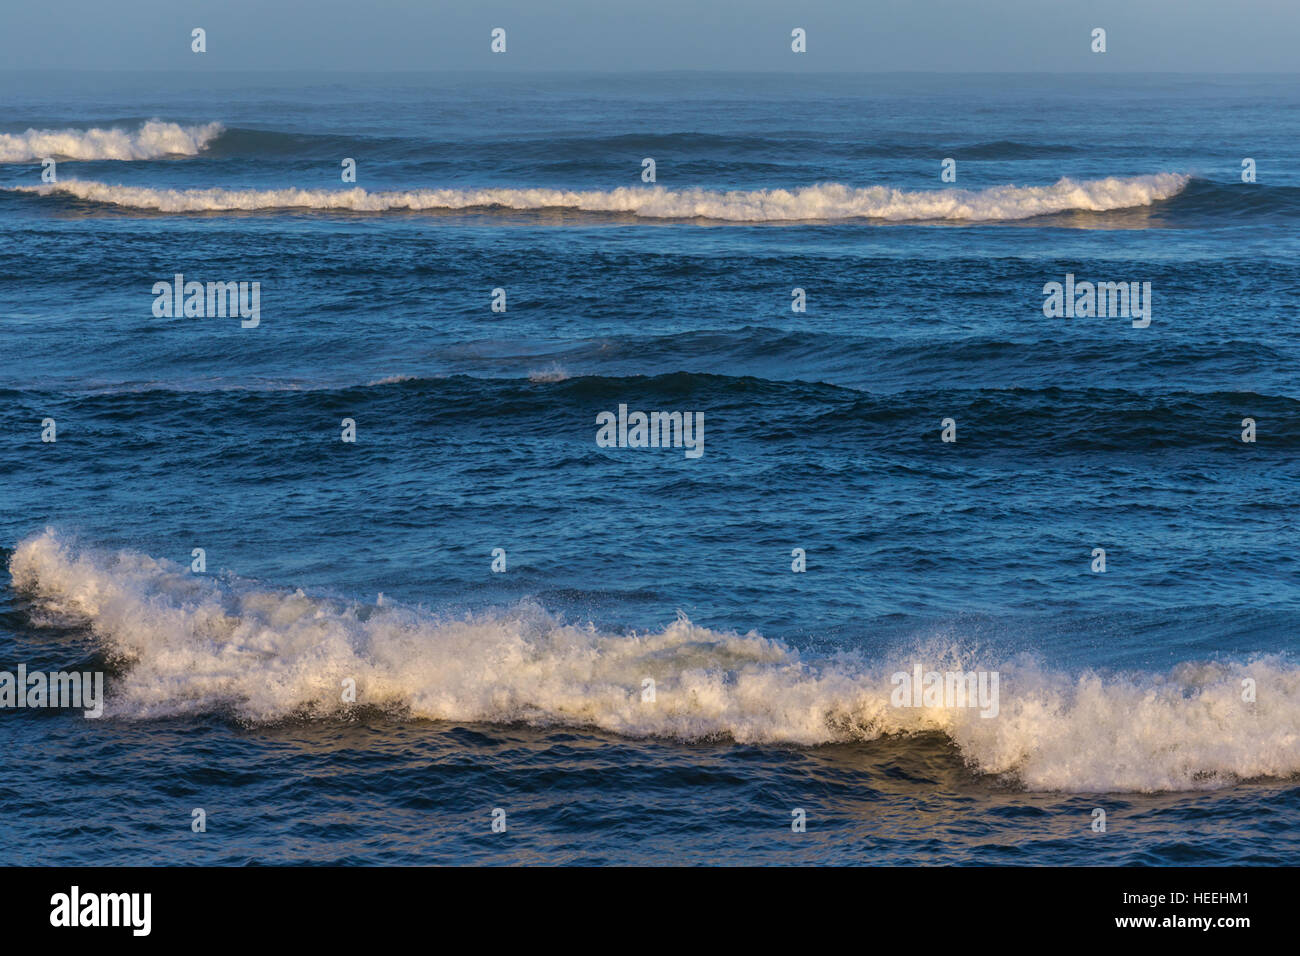 Atlantic ocean coast, Casablanca, Morocco Stock Photo